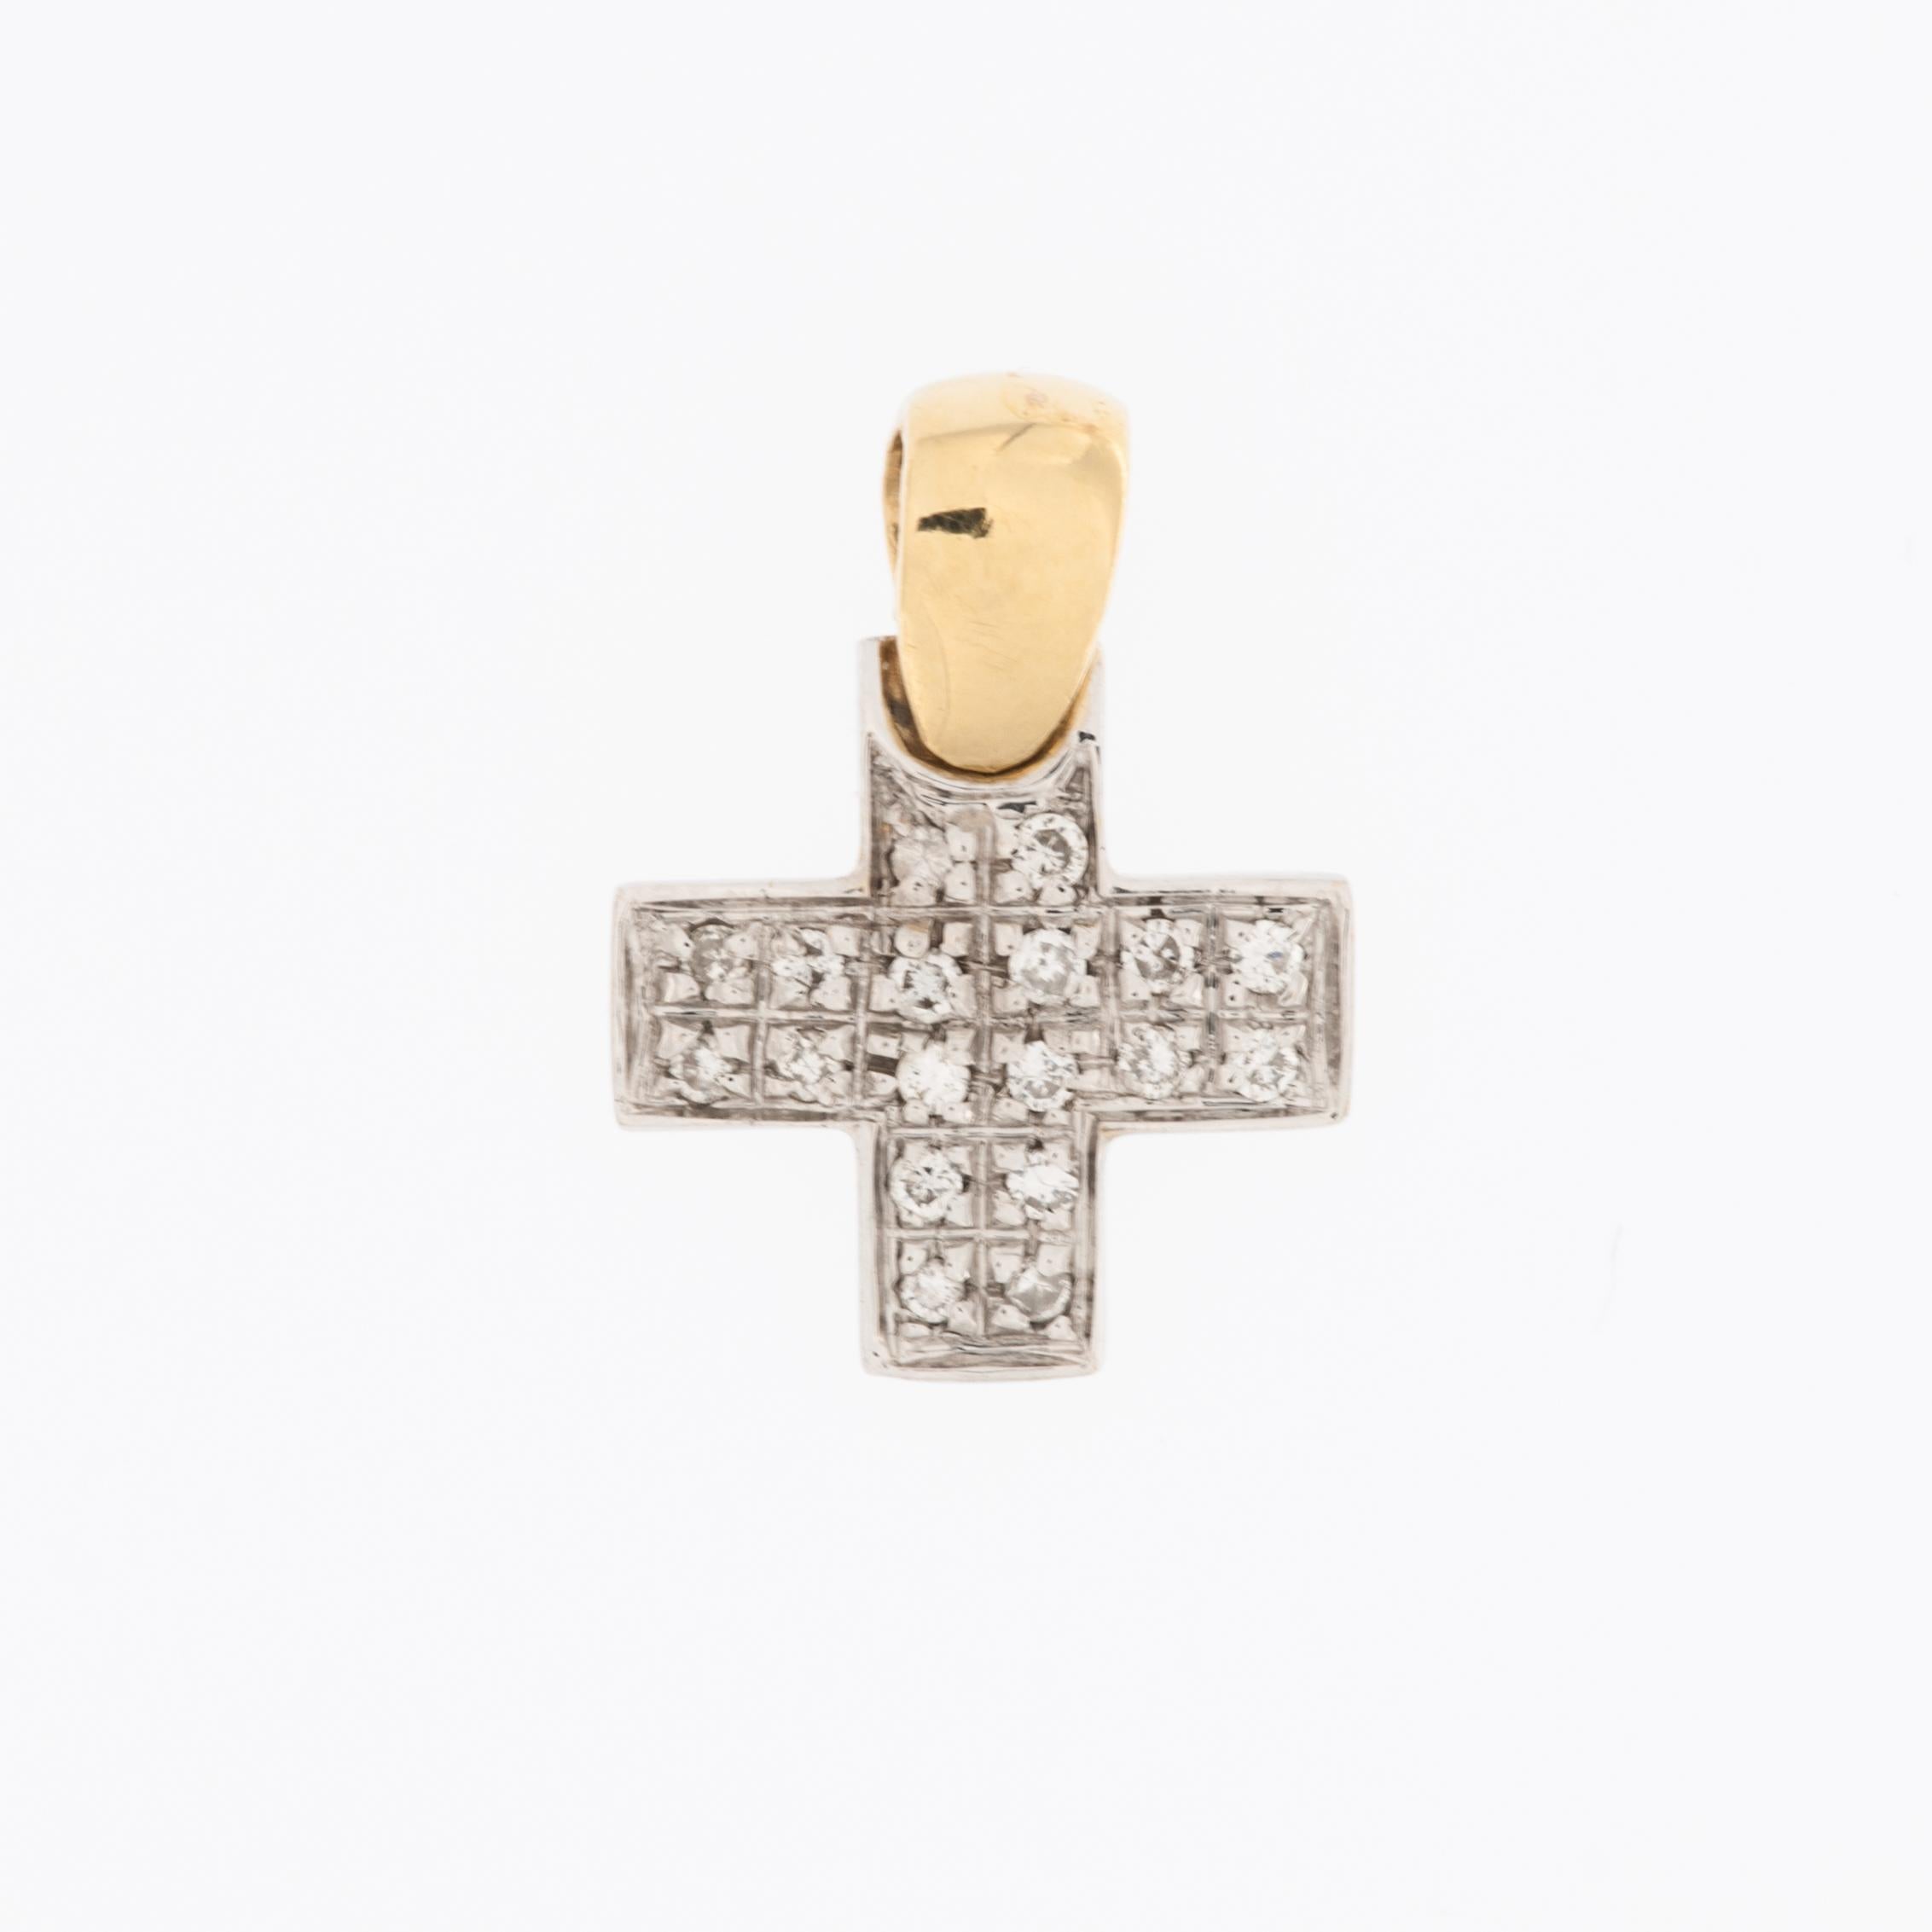 La croix italienne contemporaine en or avec diamants associe le symbolisme religieux traditionnel à des éléments de design modernes. 
La croix est conçue dans la forme classique de la croix chrétienne, une forme carrée comme la croix grecque